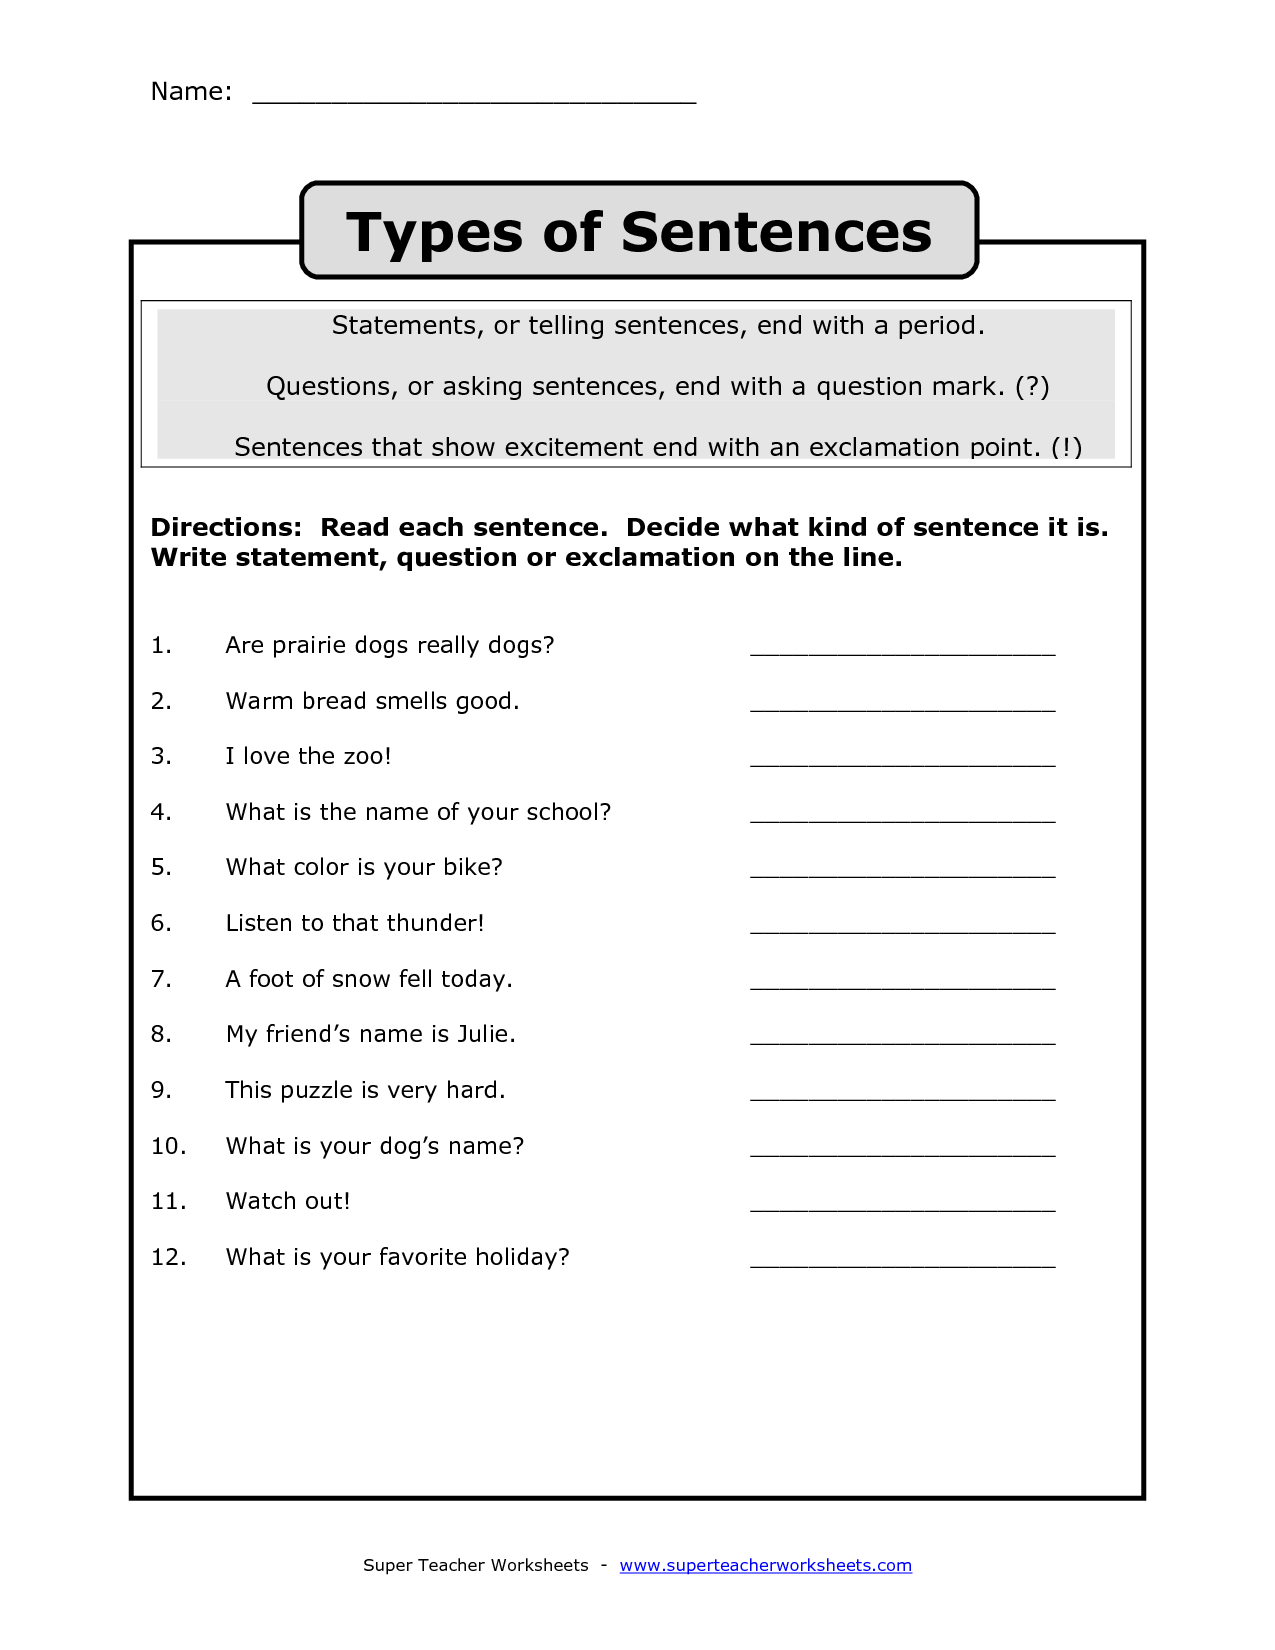 kinds-of-sentences-worksheet-for-grade-4